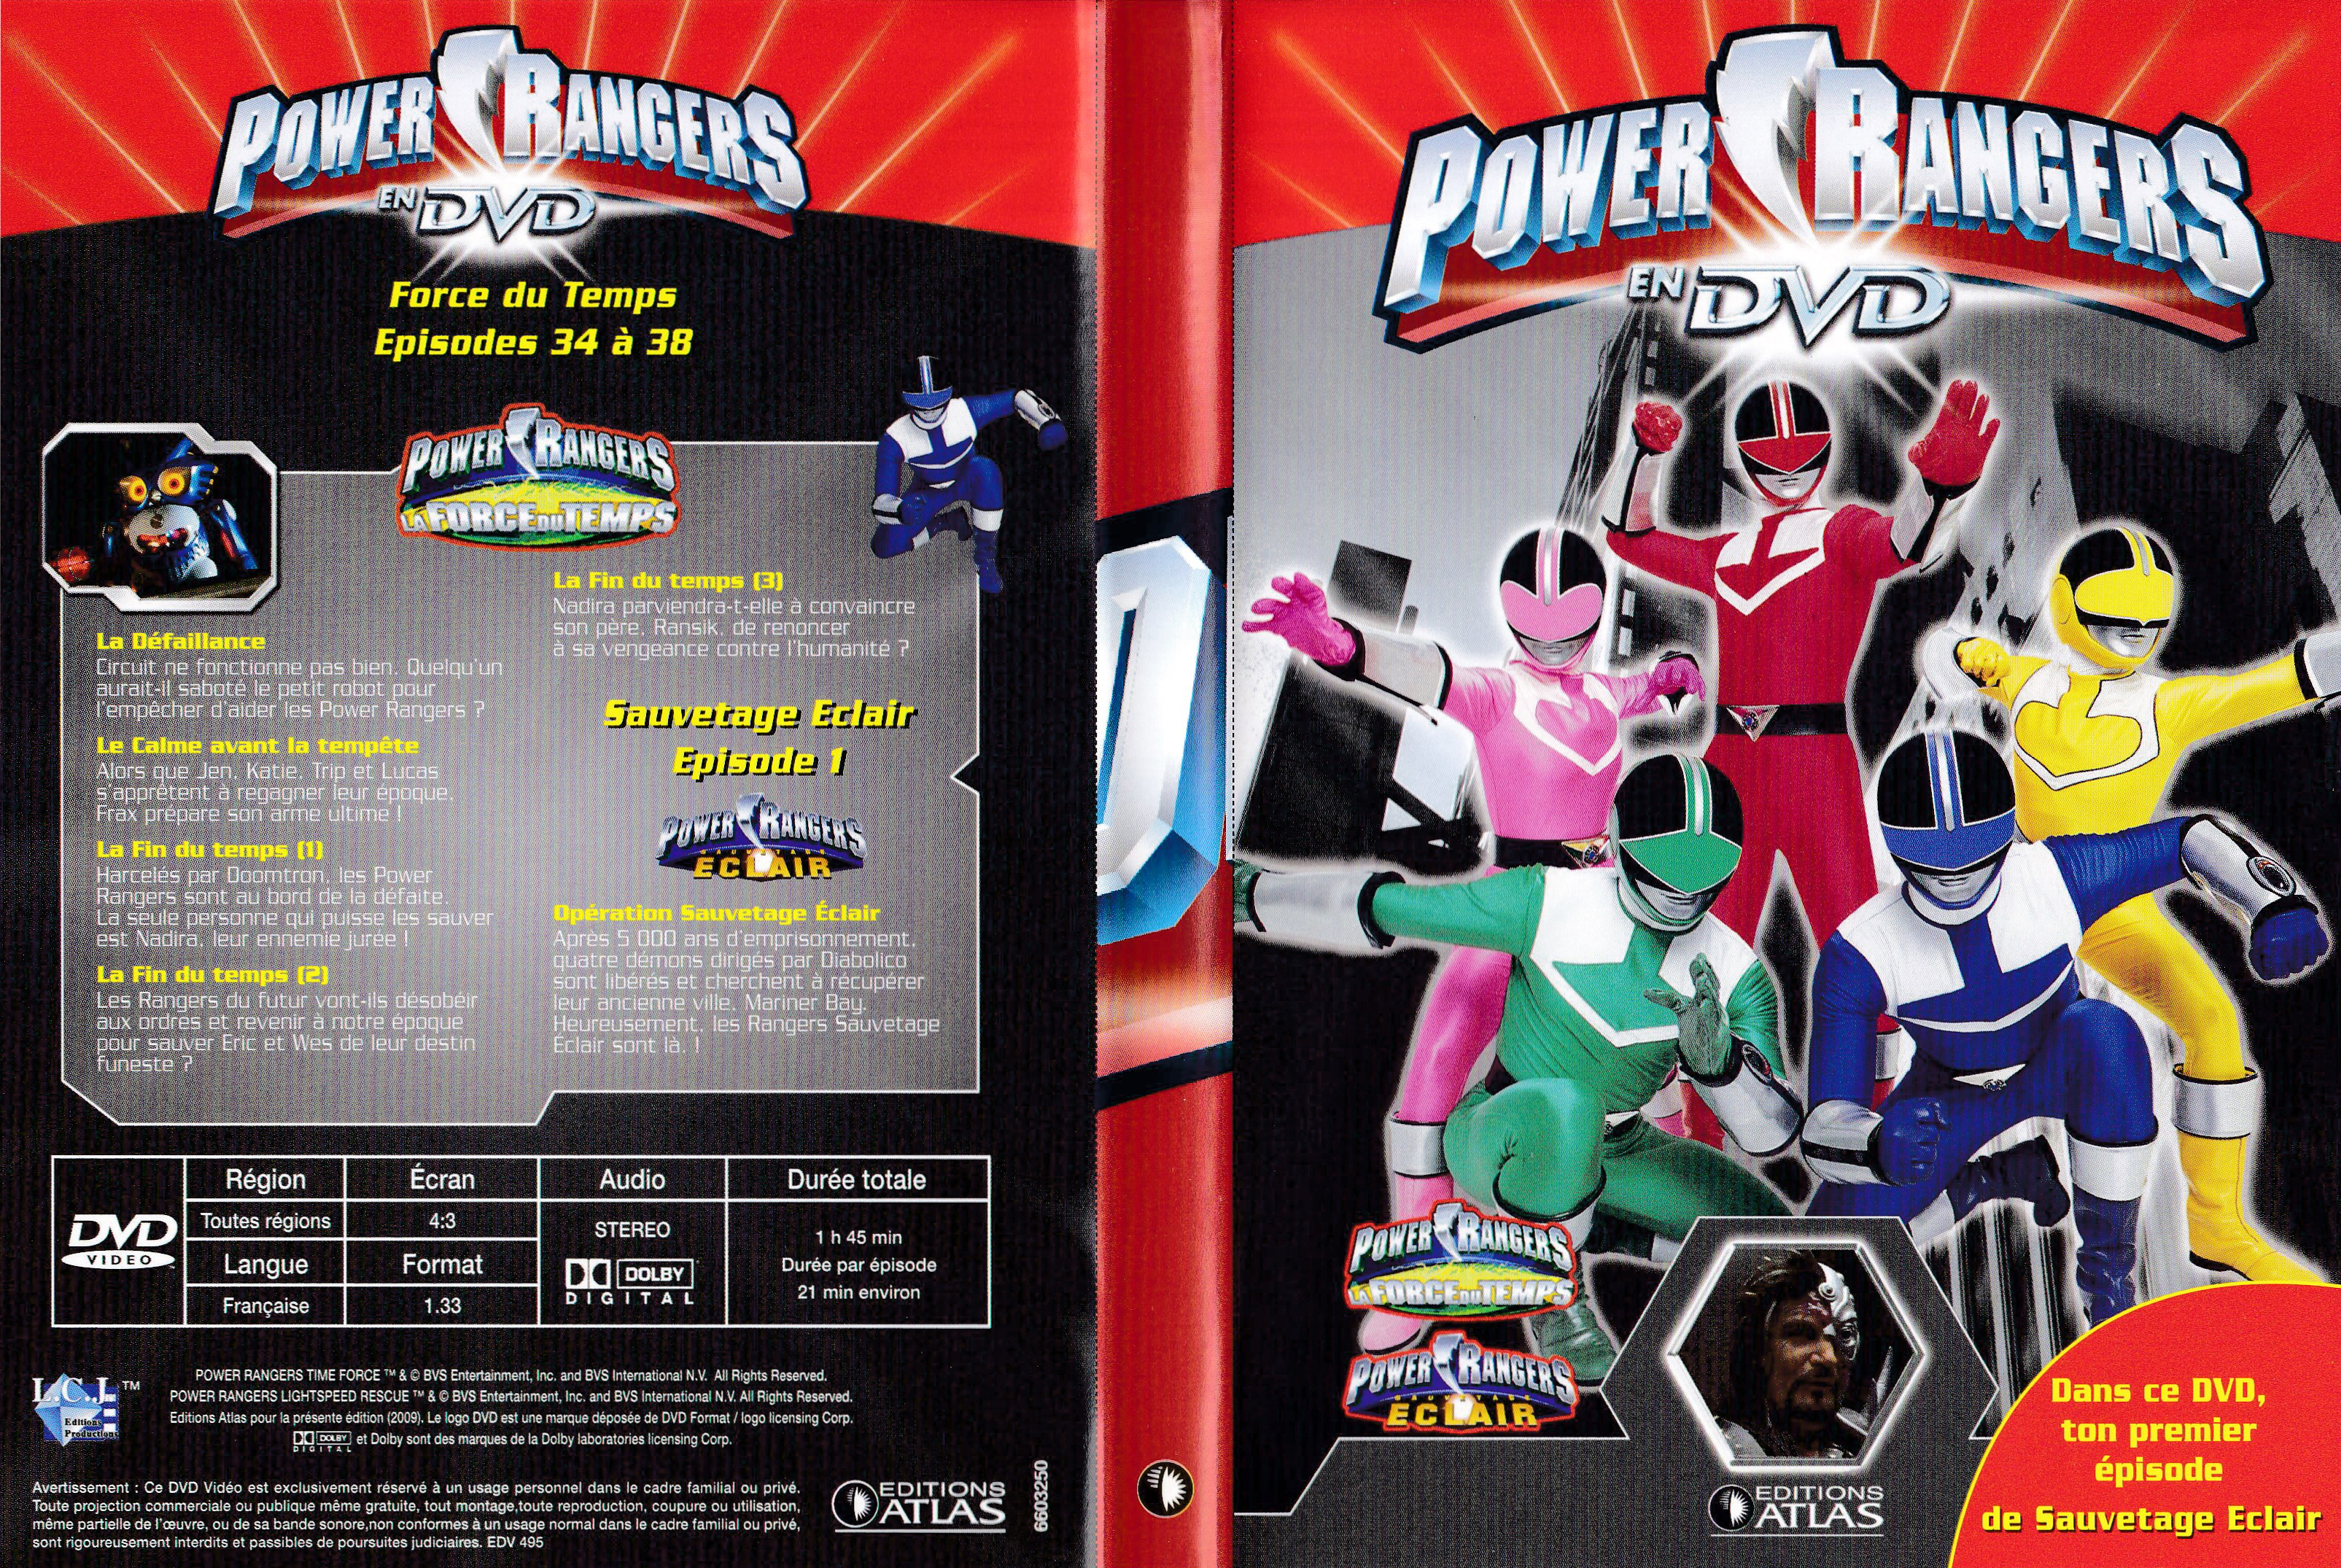 Power Rangers en DVD n°50